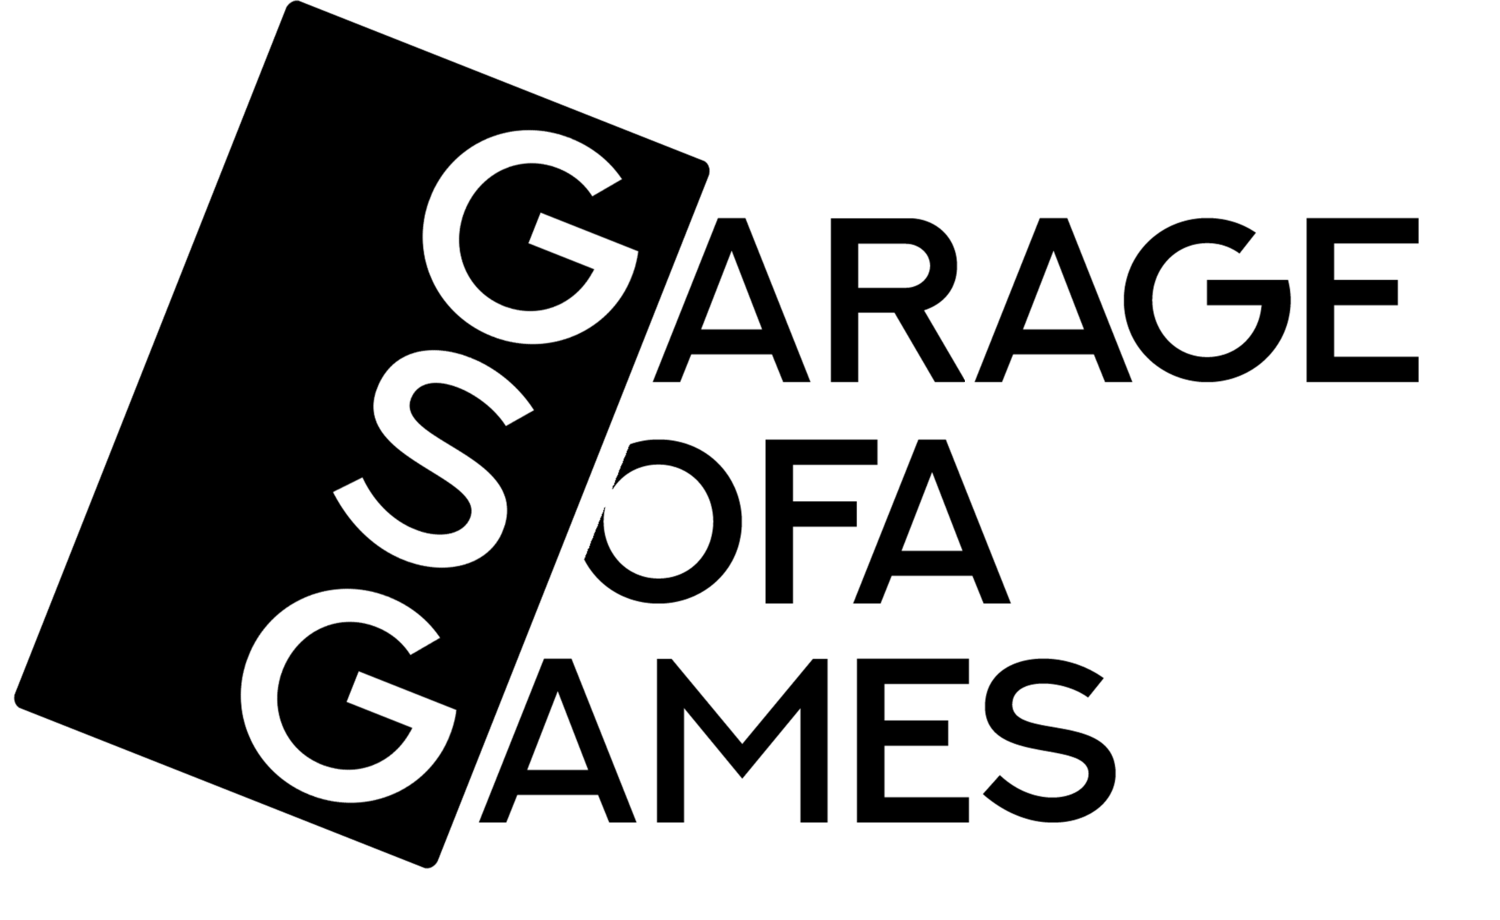 Garage Sofa Games